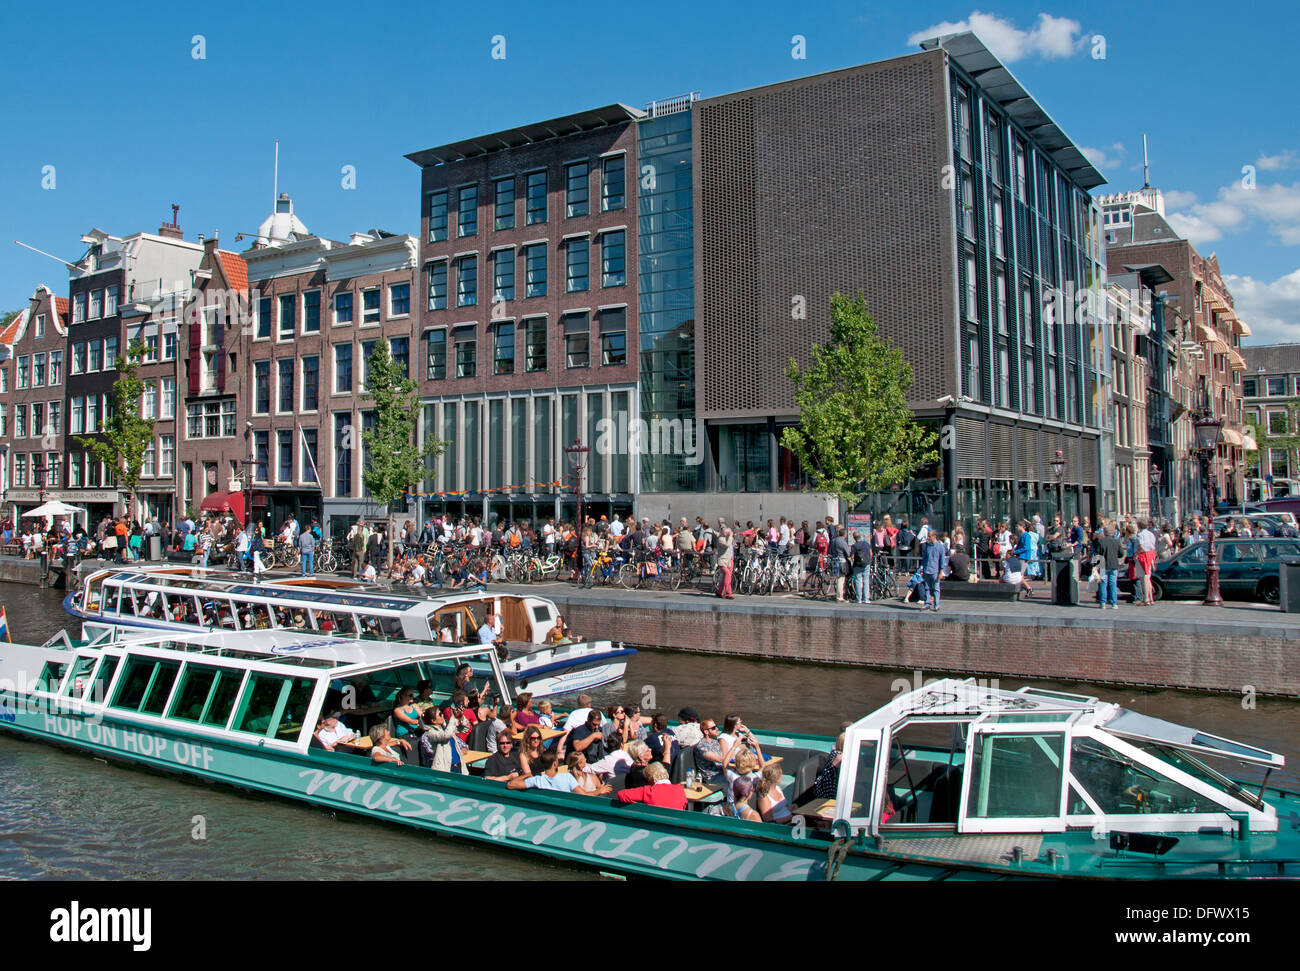 Musée d'Anne Frank ( vieille maison gauche ) Prinsengracht 263-265 Amsterdam Pays-Bas ( musée dédié à la Guerre Juive diariste ) Banque D'Images